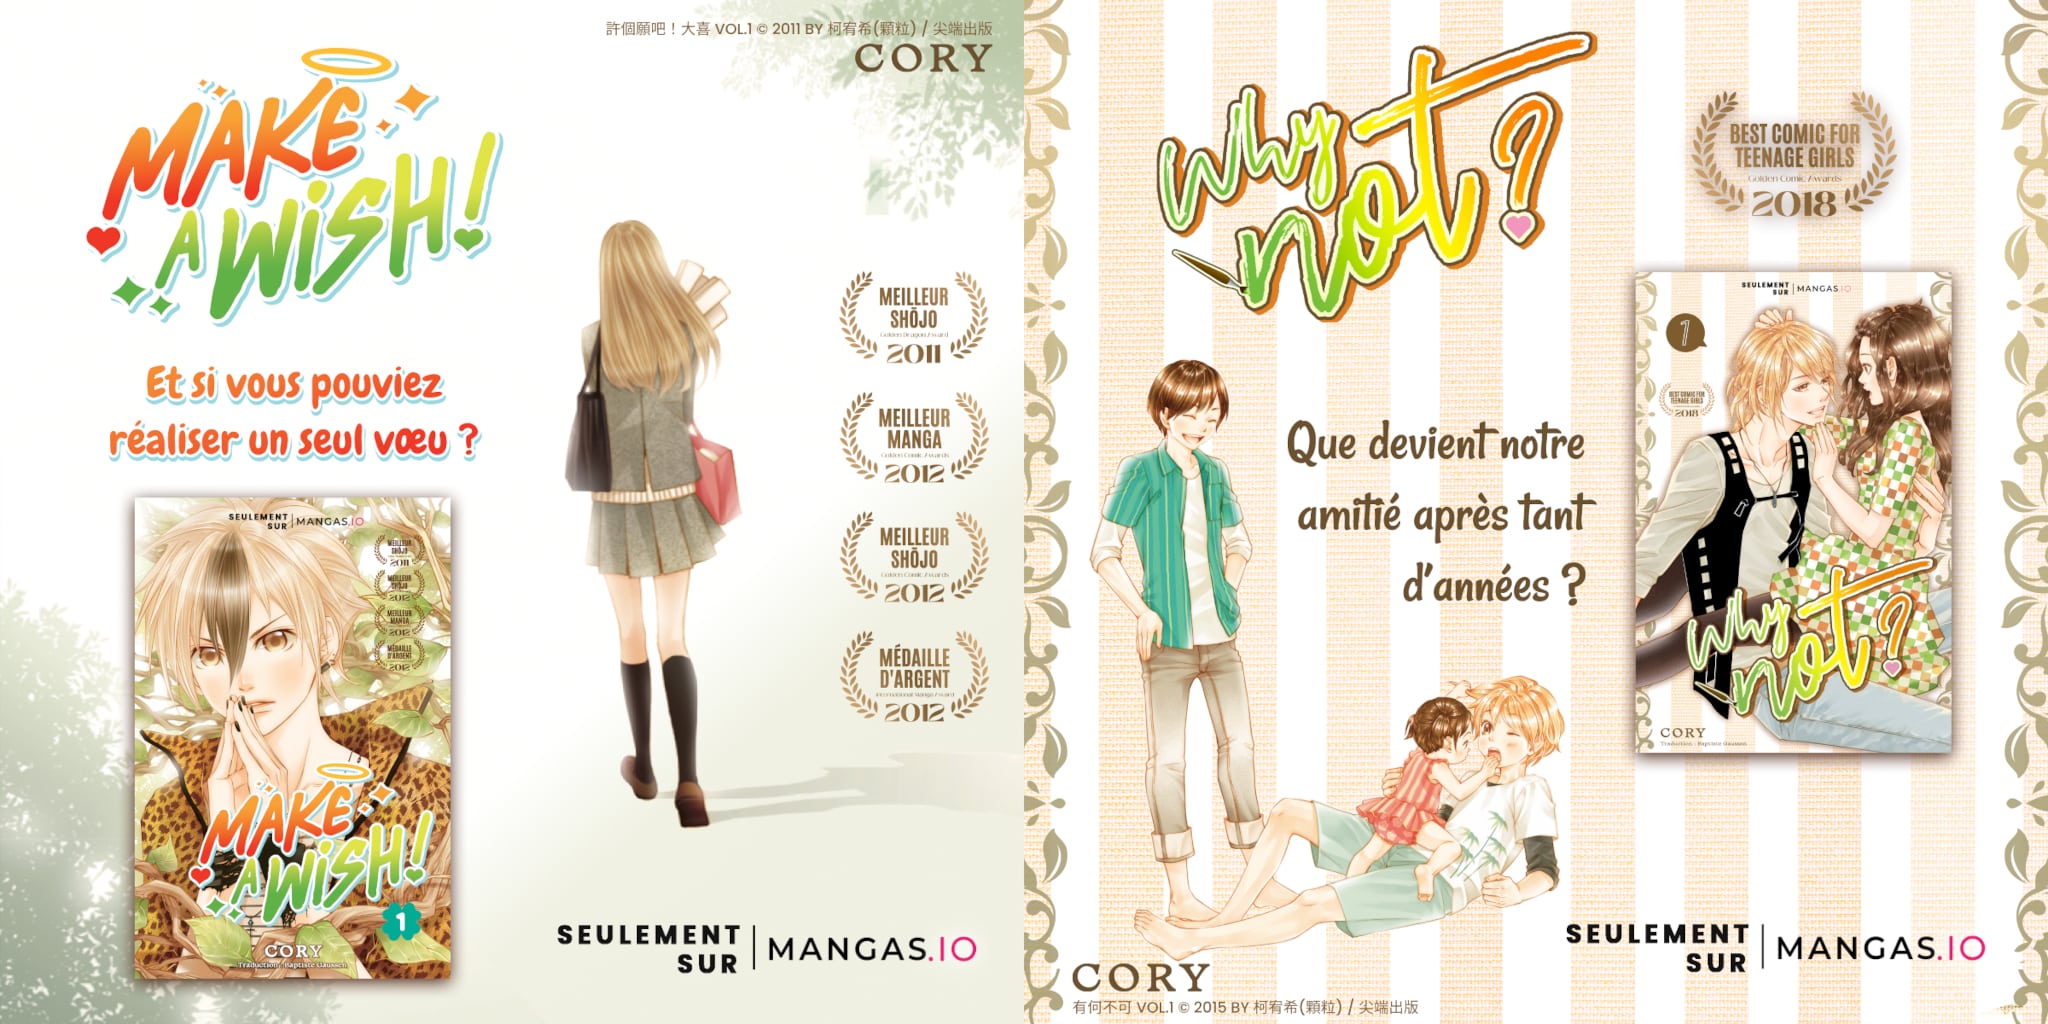 Annonce de la publication en France des mangas Make a Wish et Why Not ? de l'autrice Cory